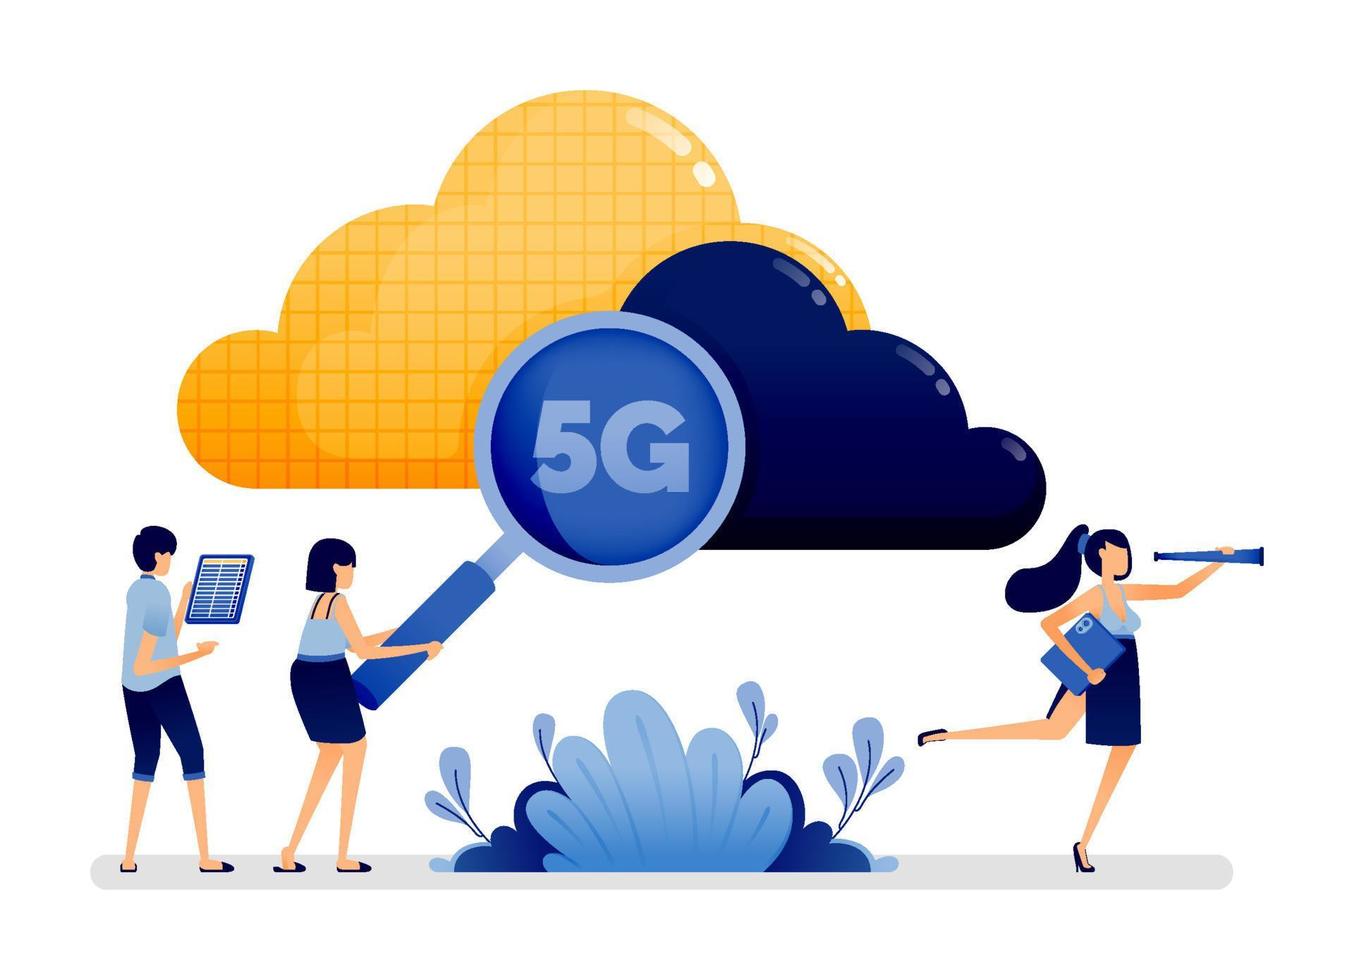 Illustrationsdesign von Cloud-Technologie und 5G-Internet zur Rationalisierung der Geschwindigkeit von Suchmaschinen bei der Verarbeitung von Daten. Vektor kann für Zielseite, Web, Website, Poster, mobile Apps, Anzeigen, Flyer verwendet werden